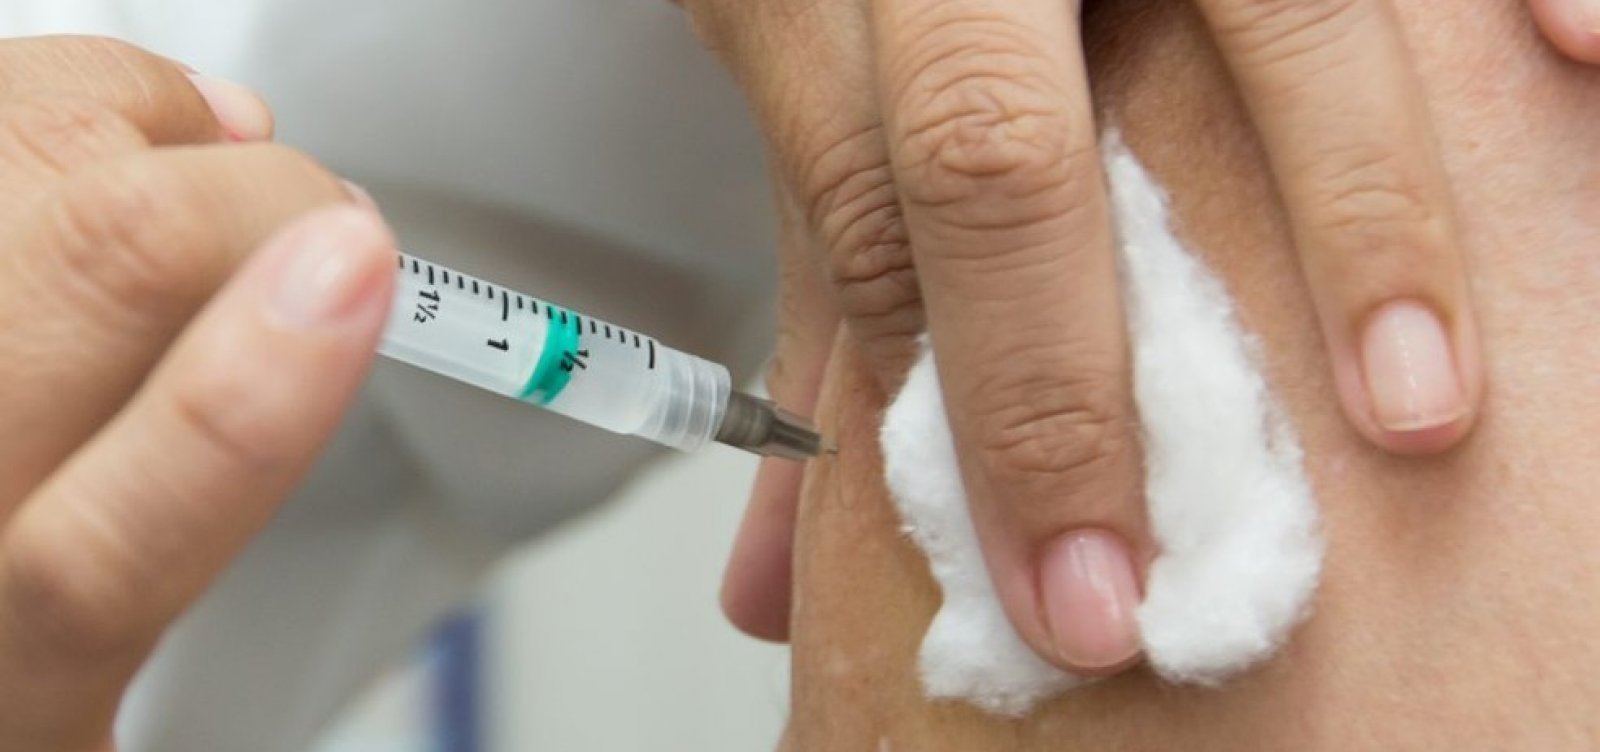 Promotores de Justiça irão pedir aos prefeitos que intensifiquem a vacinação na Bahia